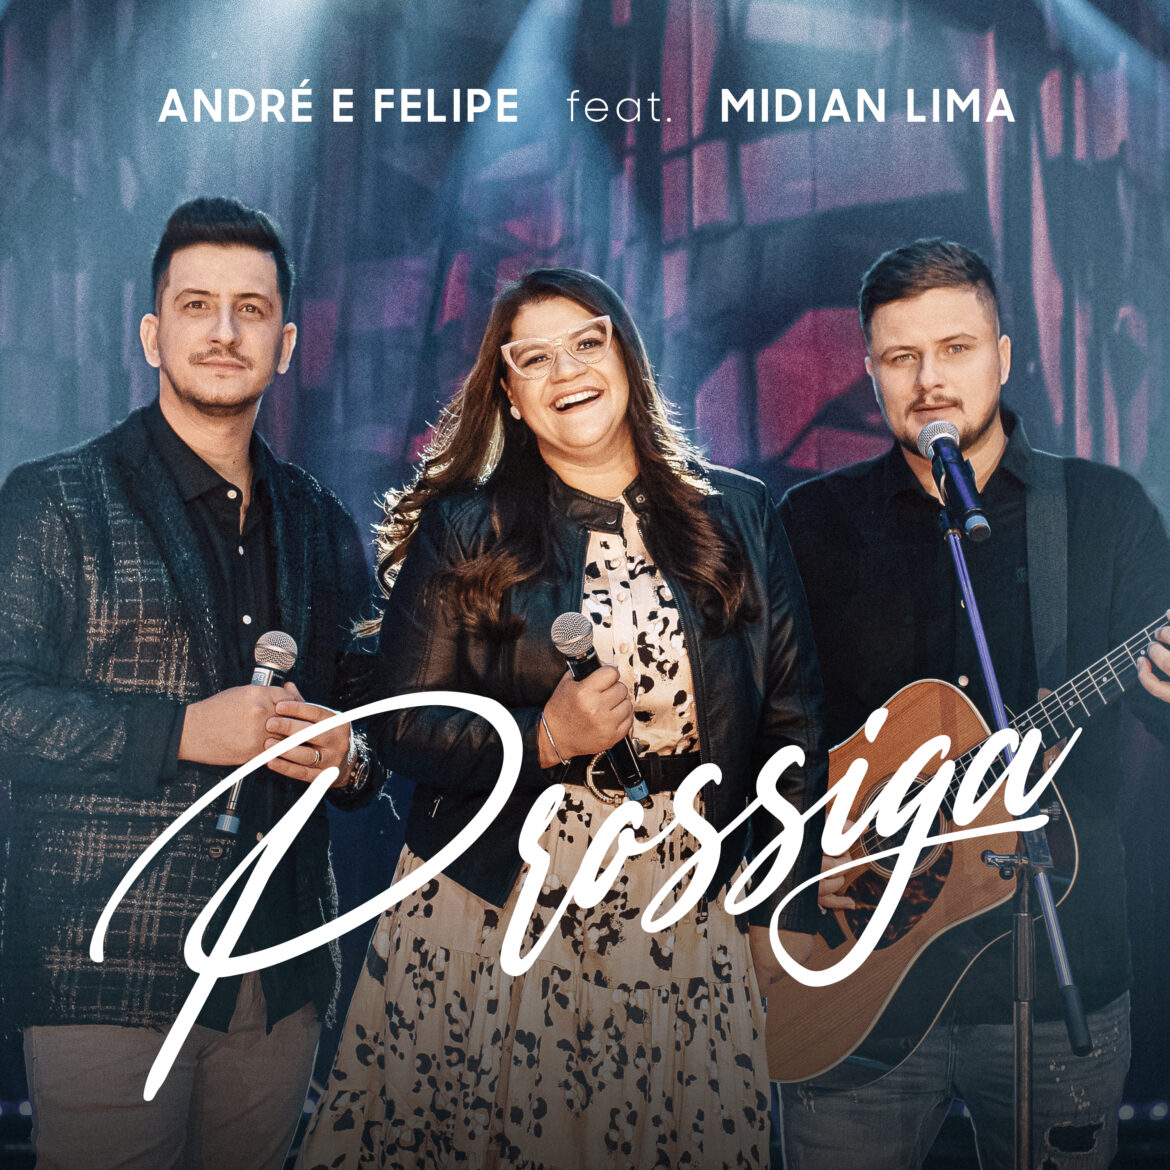 Com a força de um testemunho, André e Felipe lançam “Prossiga” feat. Midian Lima